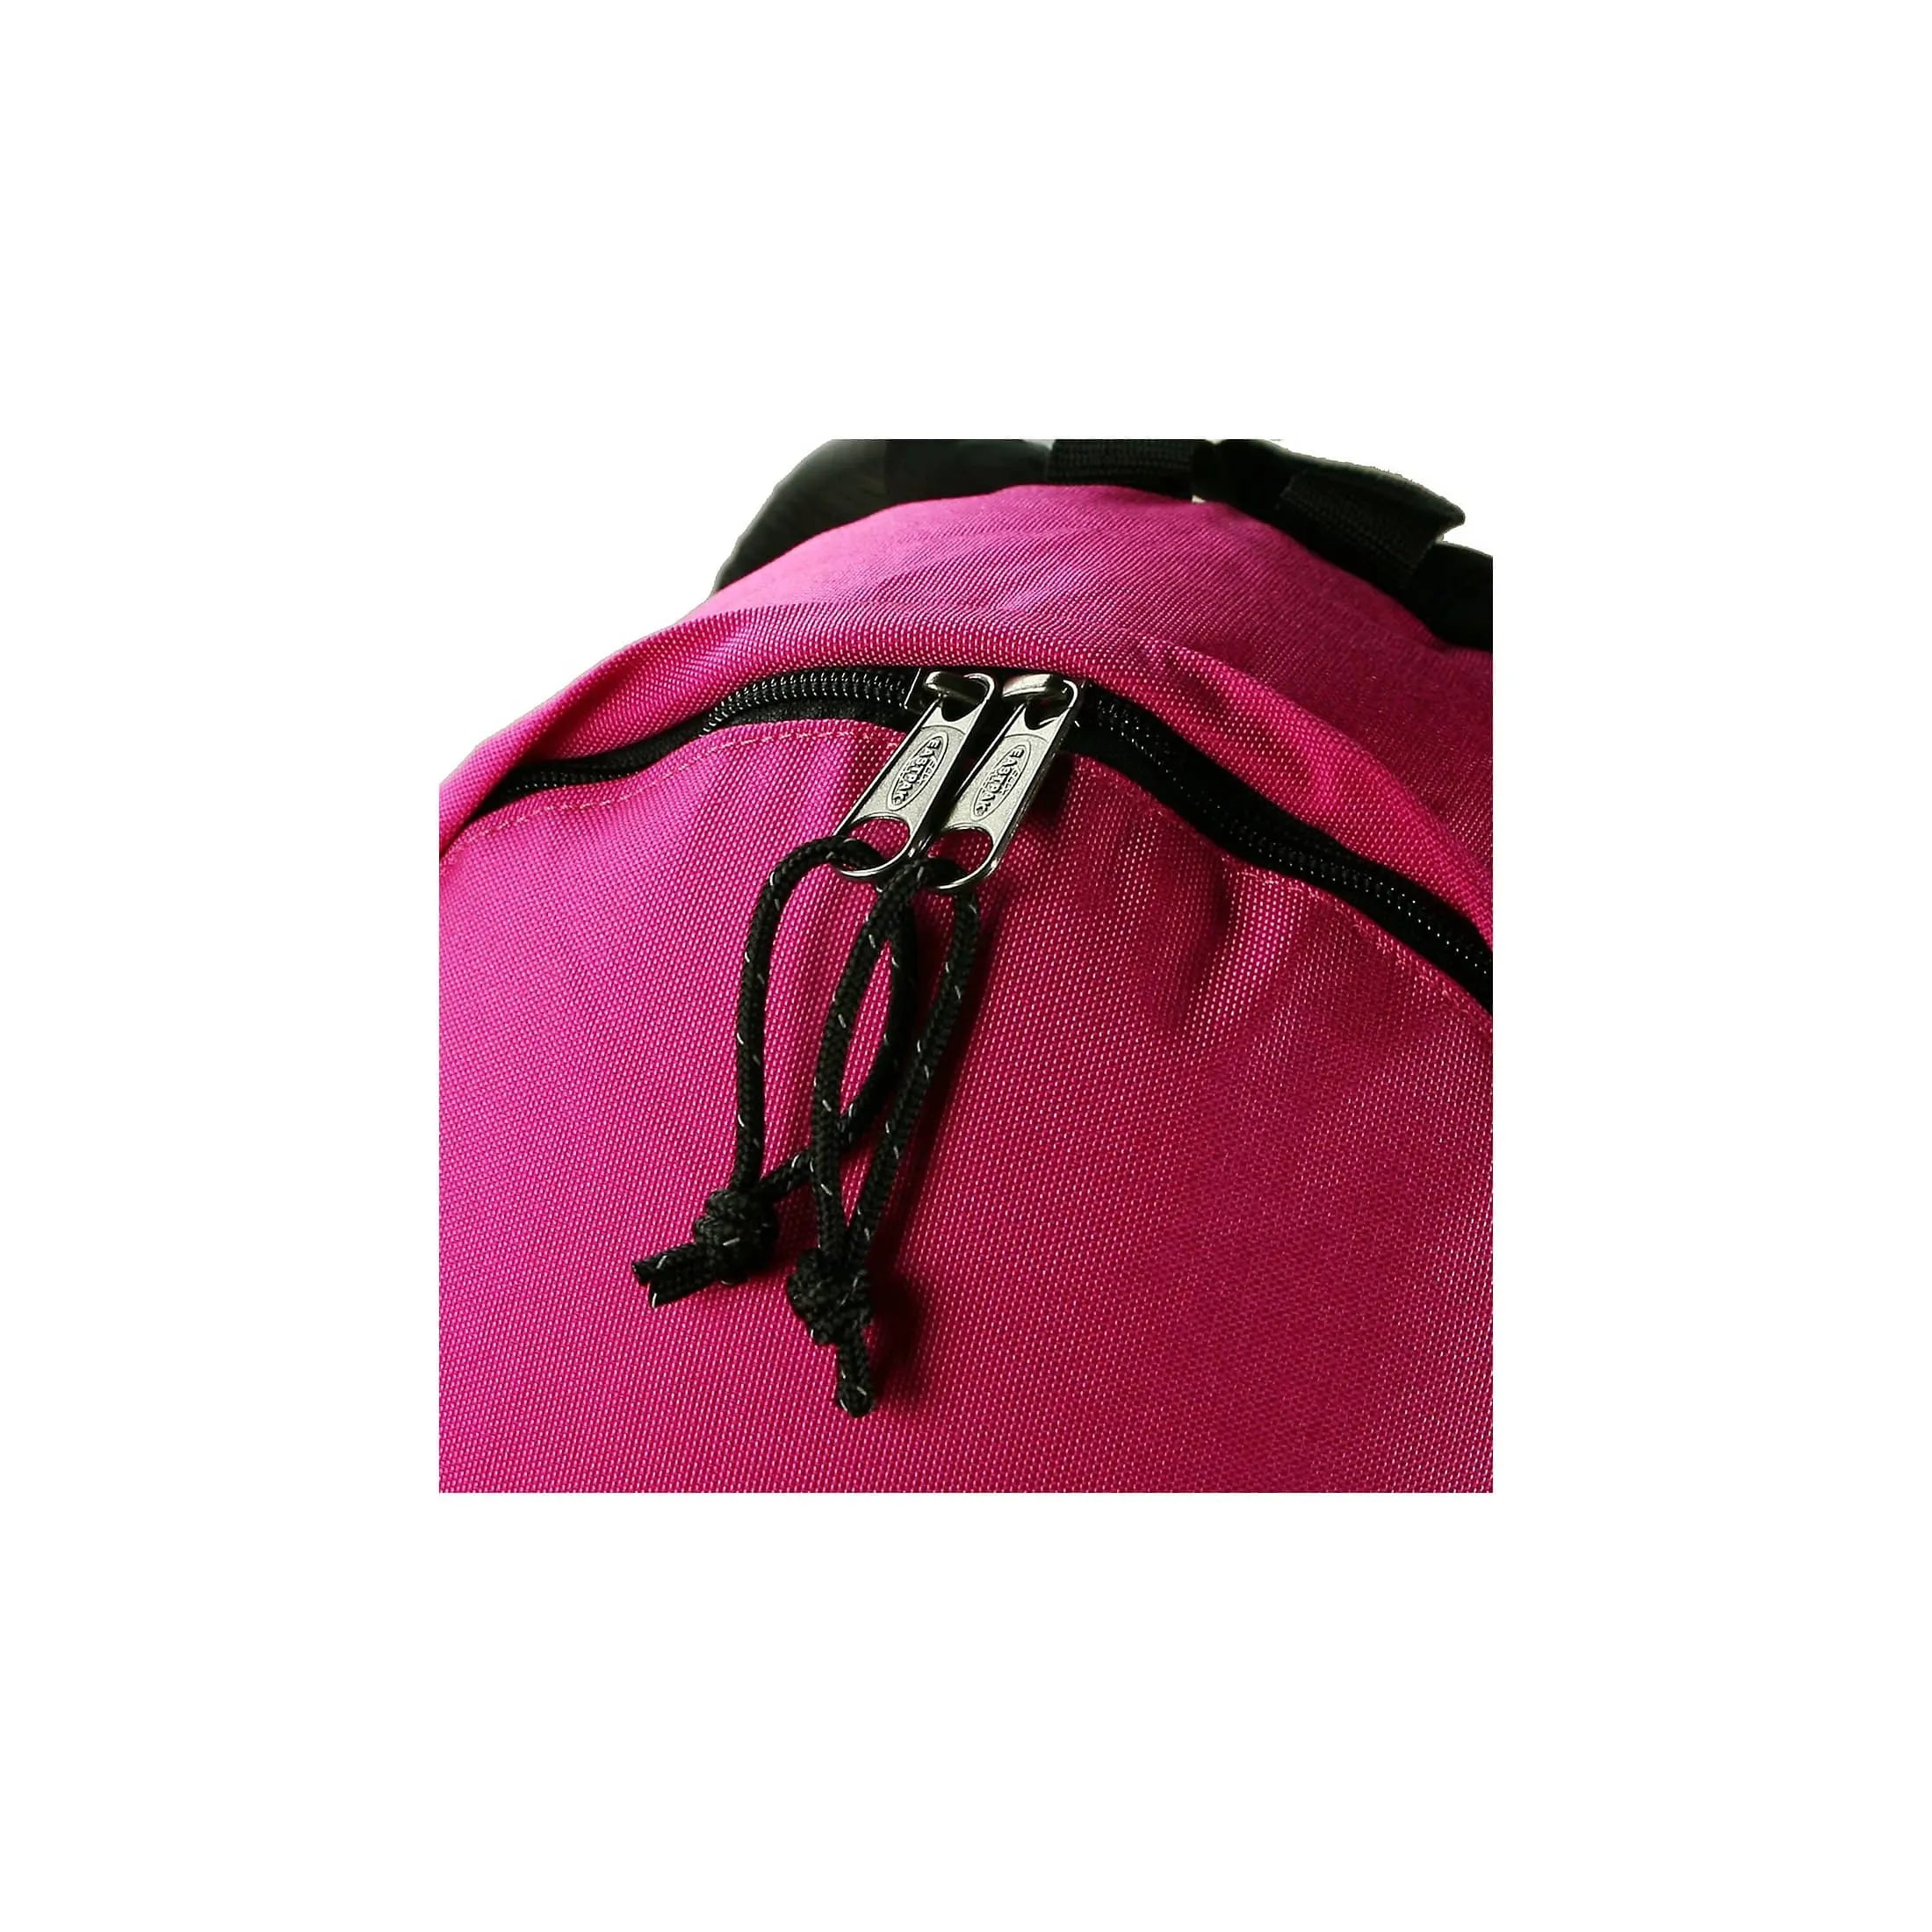 Eastpak Authentic Orbit sac à dos de loisirs 33 cm - denim noir